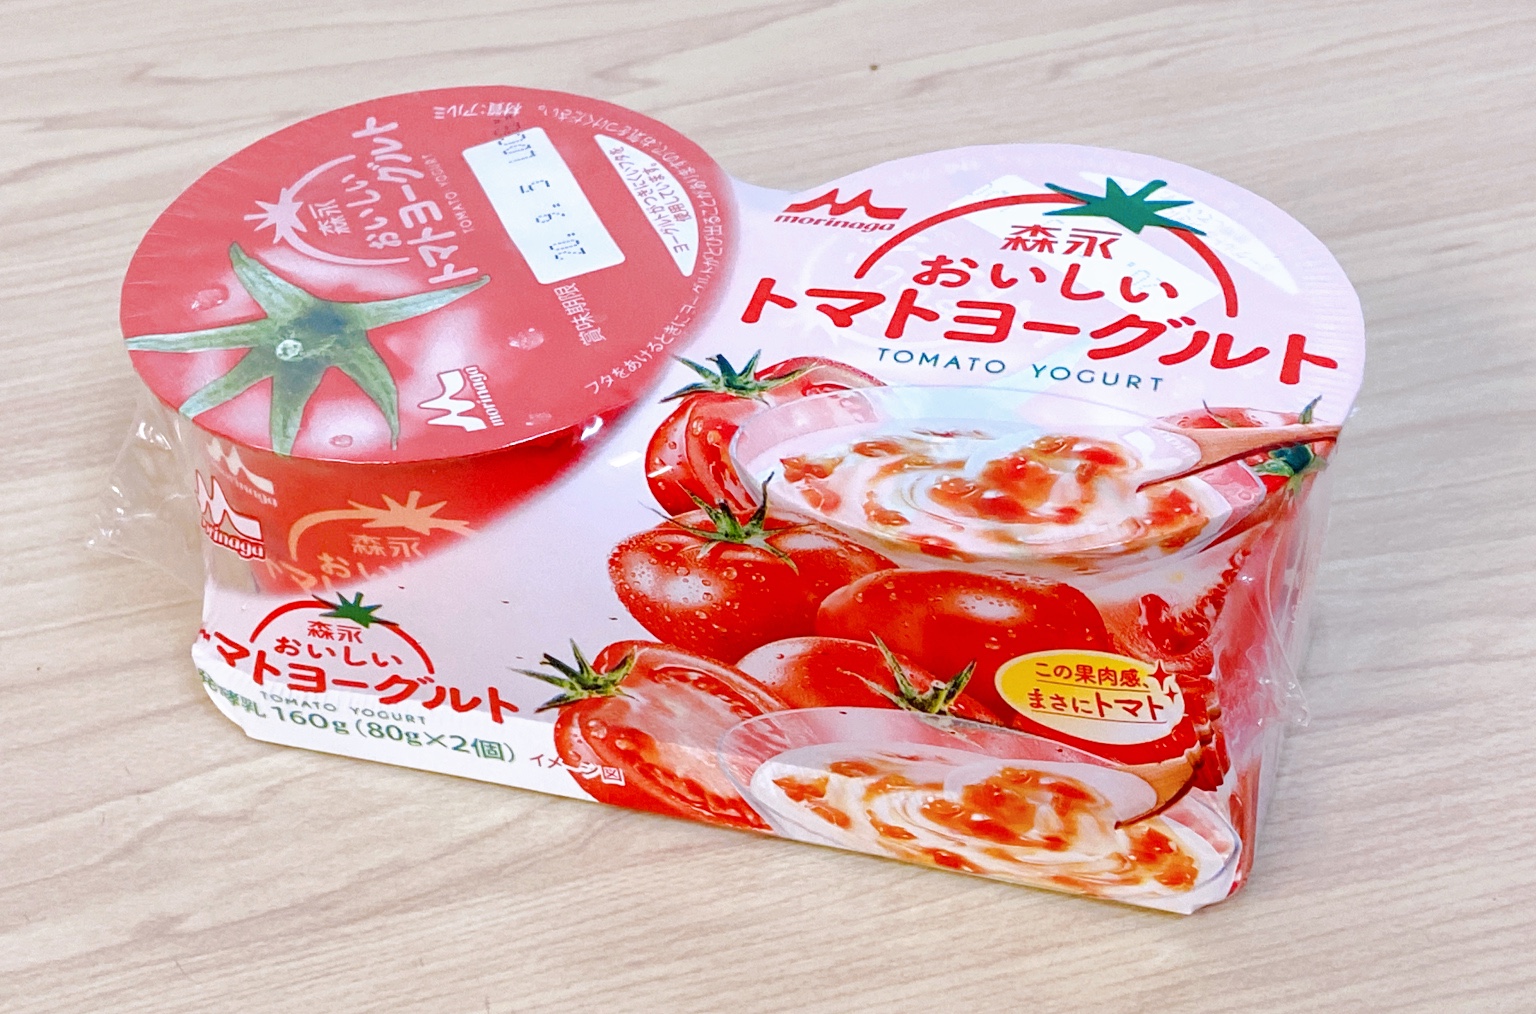 トマトヨーグルト というヤバそうな商品が誕生してしまったので仕方なく食べてみた結果 ロケットニュース24